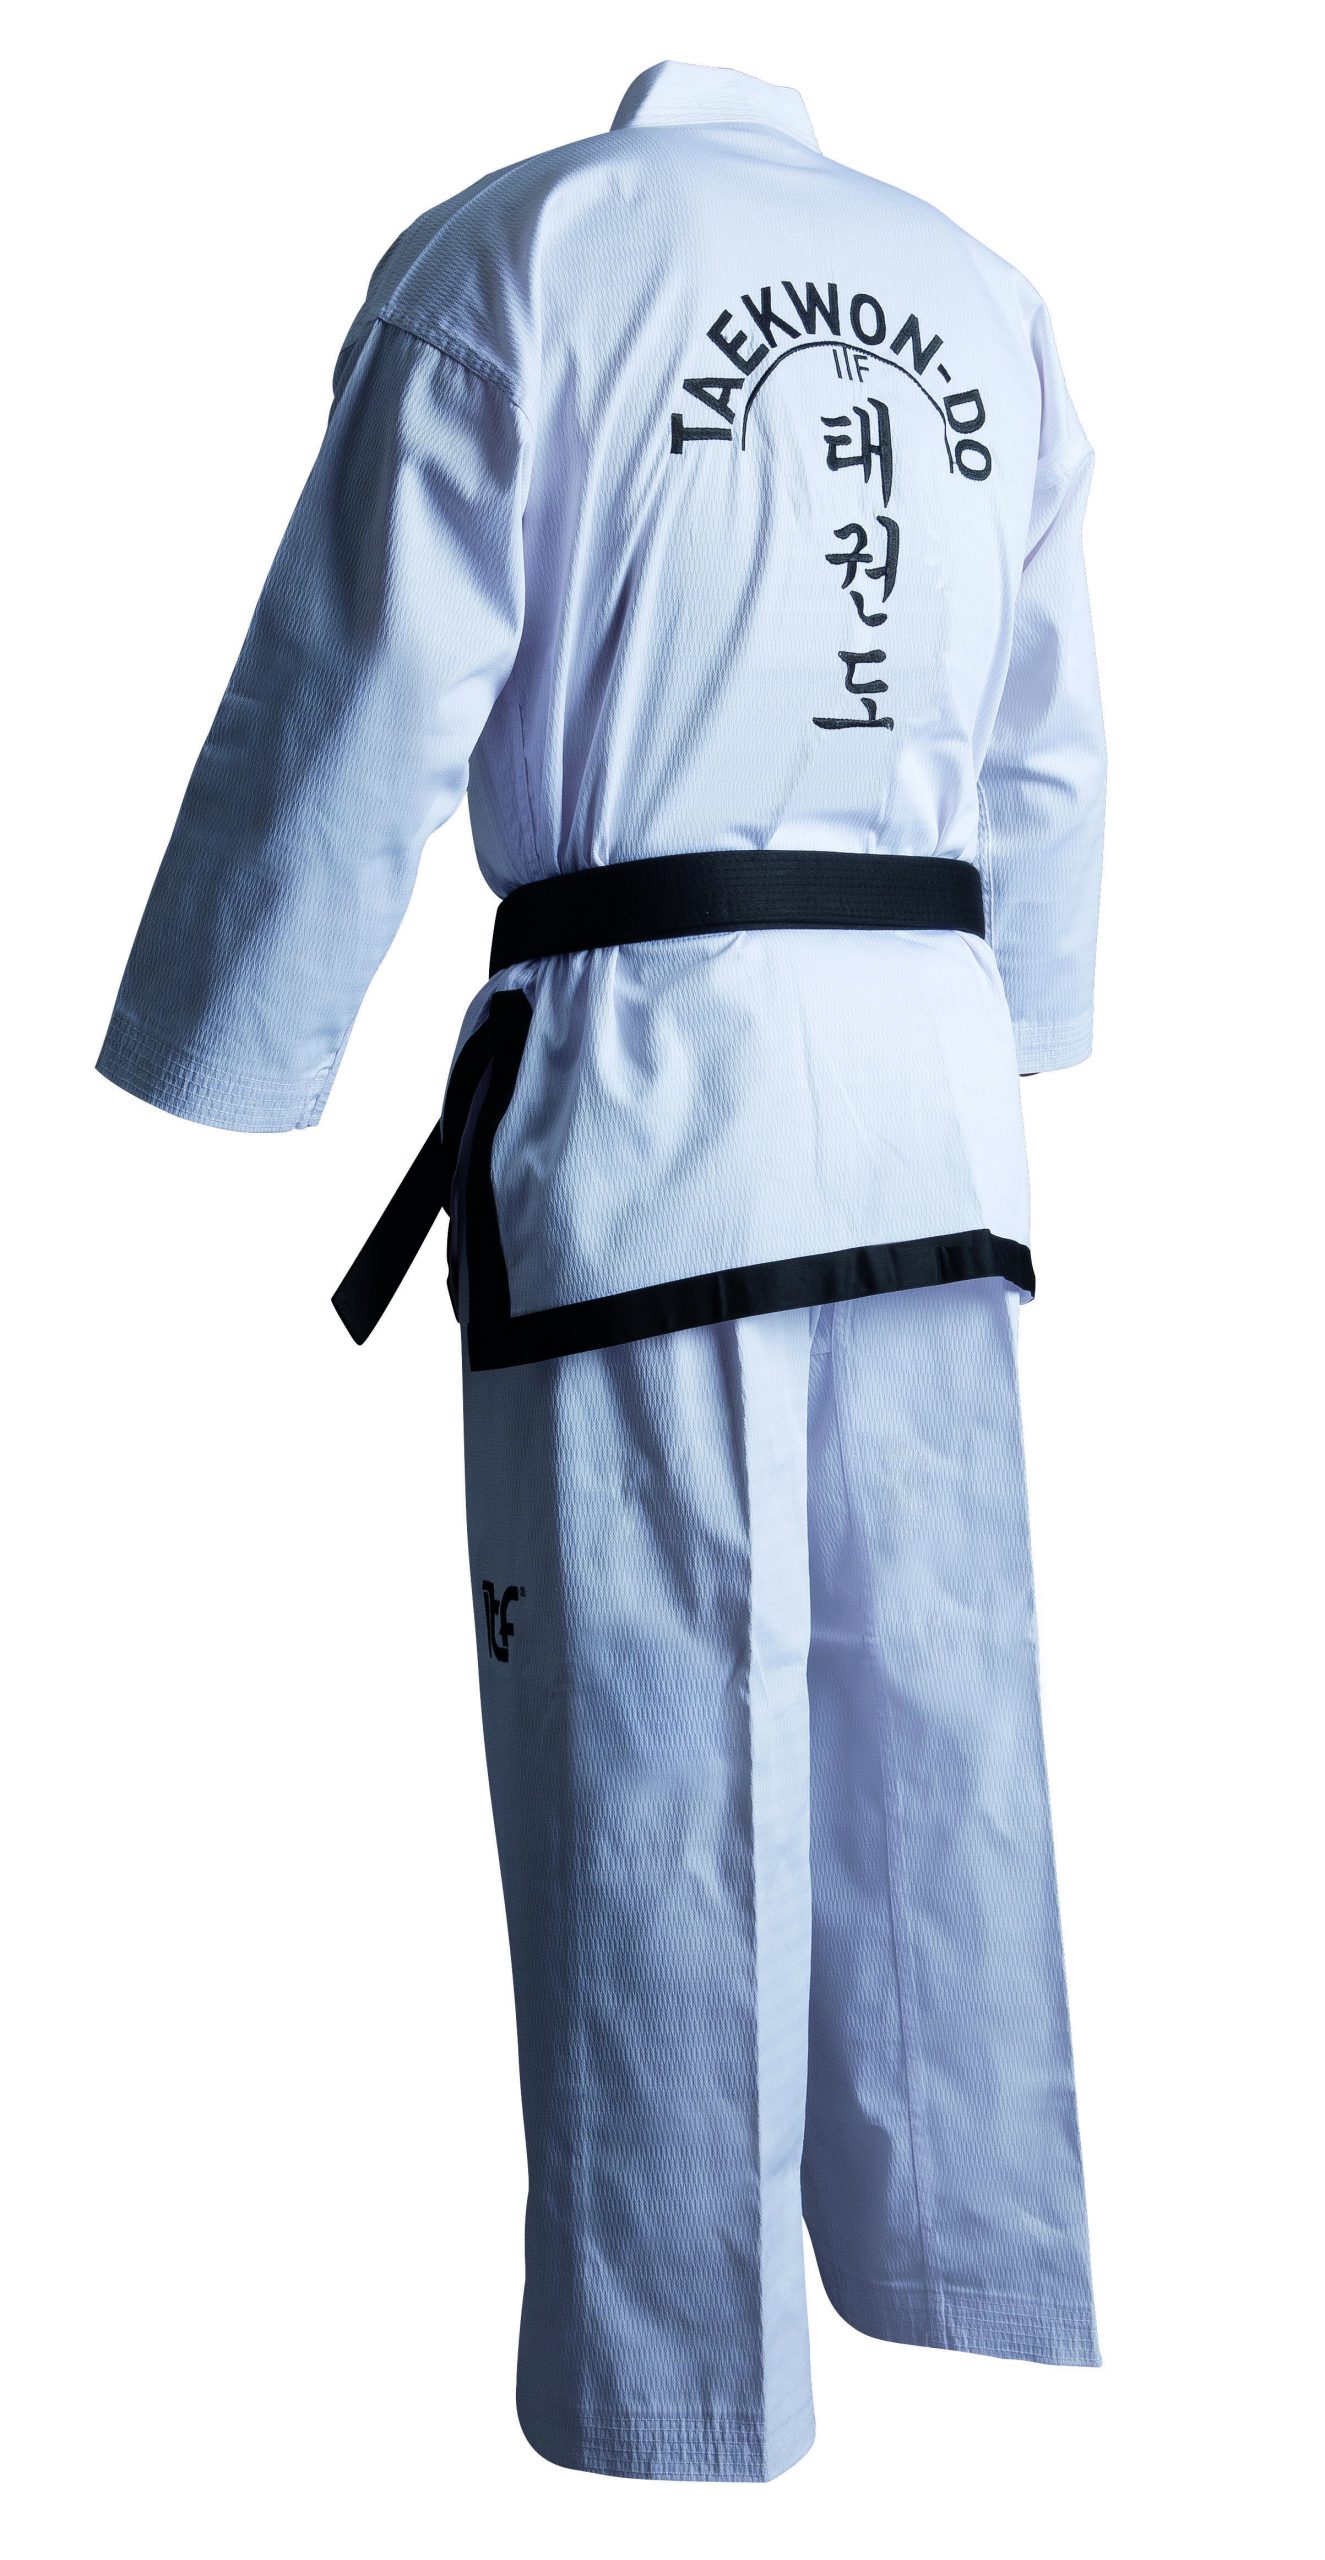 Adidas Taekwondopak Dobok Instructor ITF Approved